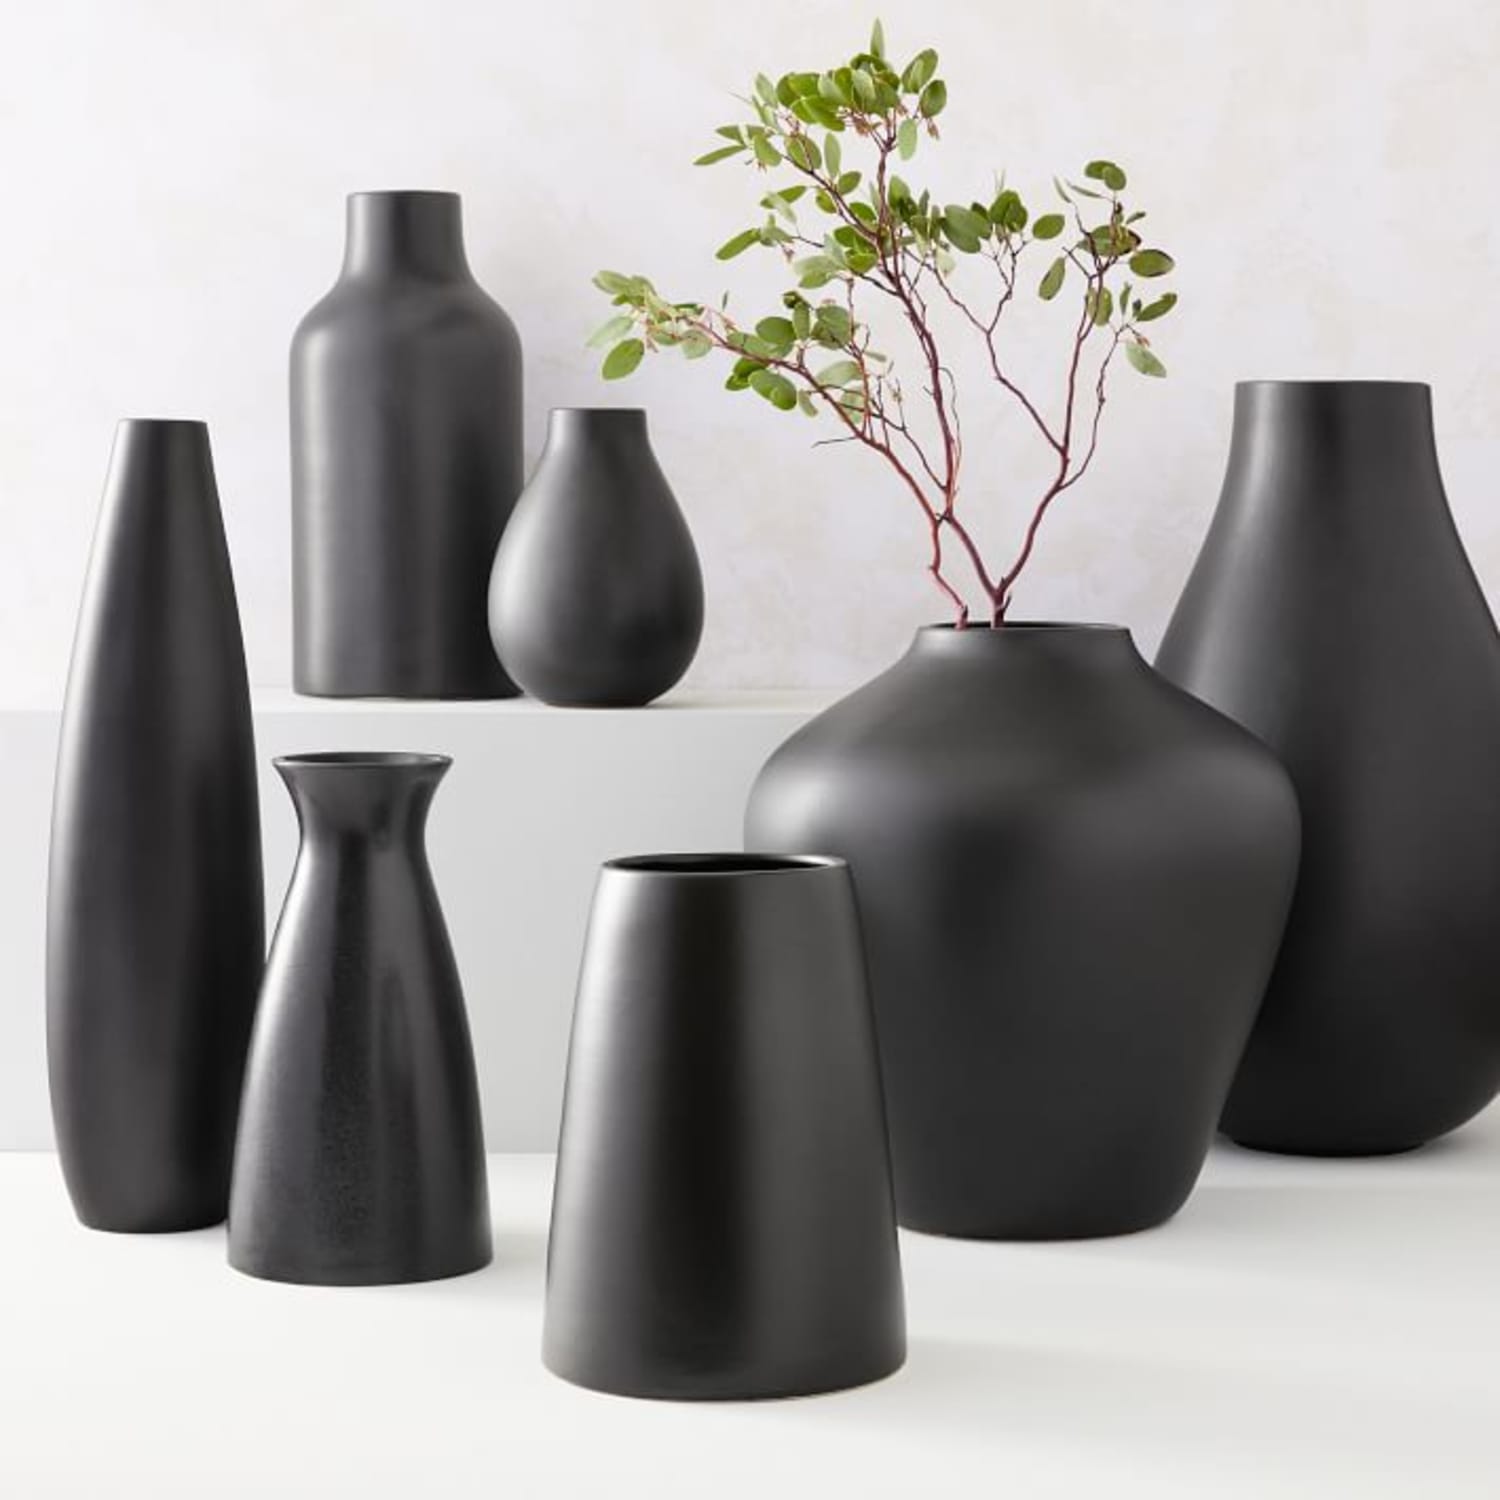 Ваза черная матовая. 1563290567-Pure-Black-Ceramic-Vases-c_Ceramic+Vases. Стильные вазы для интерьера. Керамическая ваза. Черные вазы.